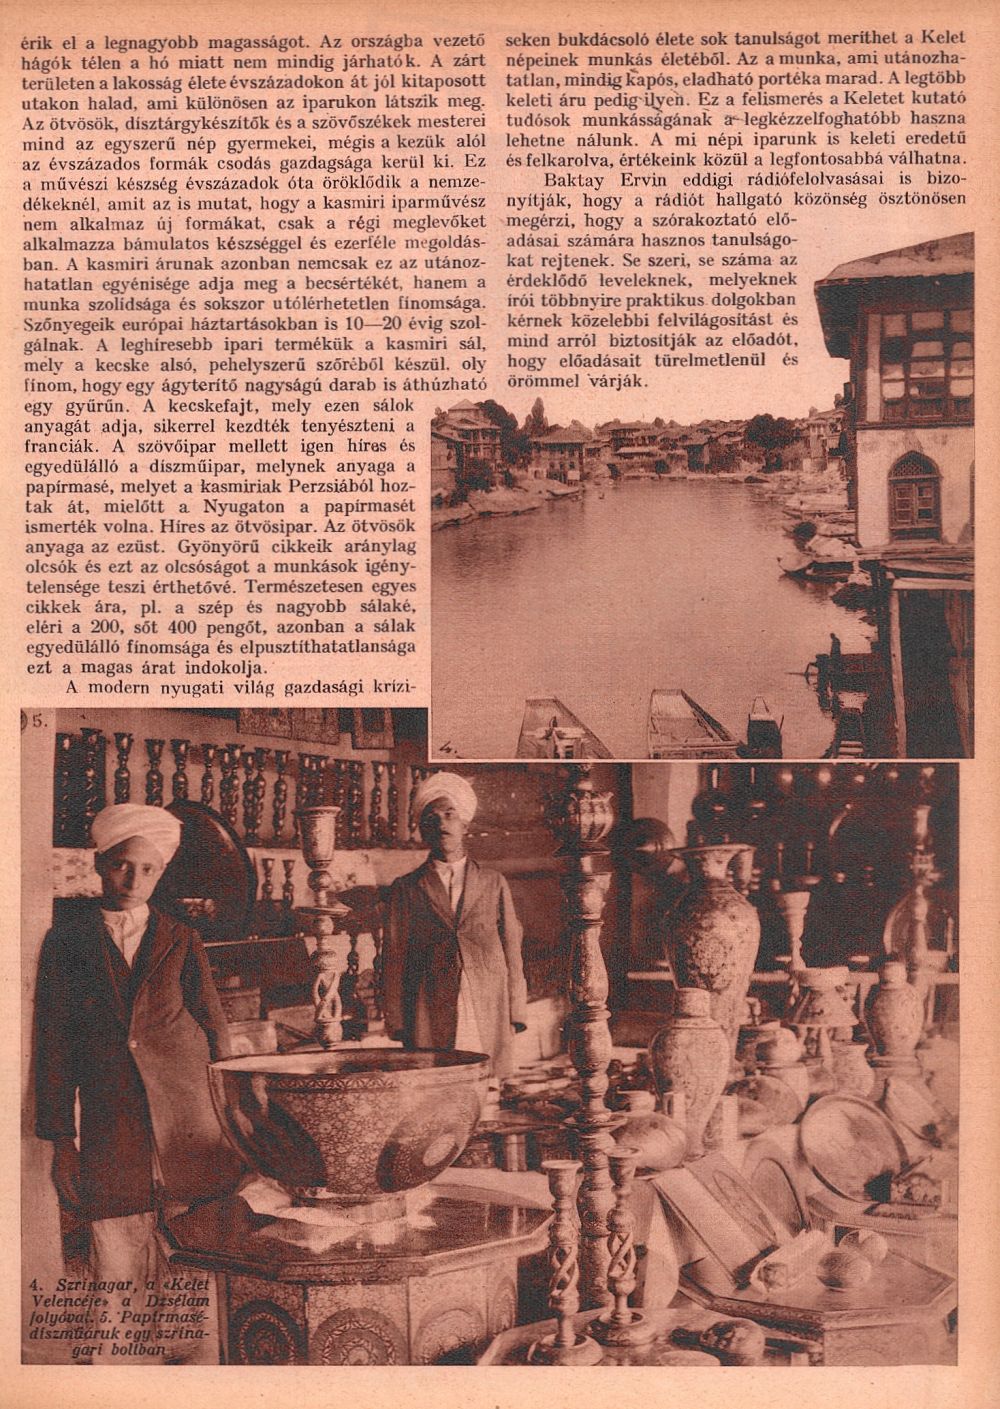 A kelet Velencéje. = Rádióélet. 1933. okt. 20. (43. sz.) p. 6-7.